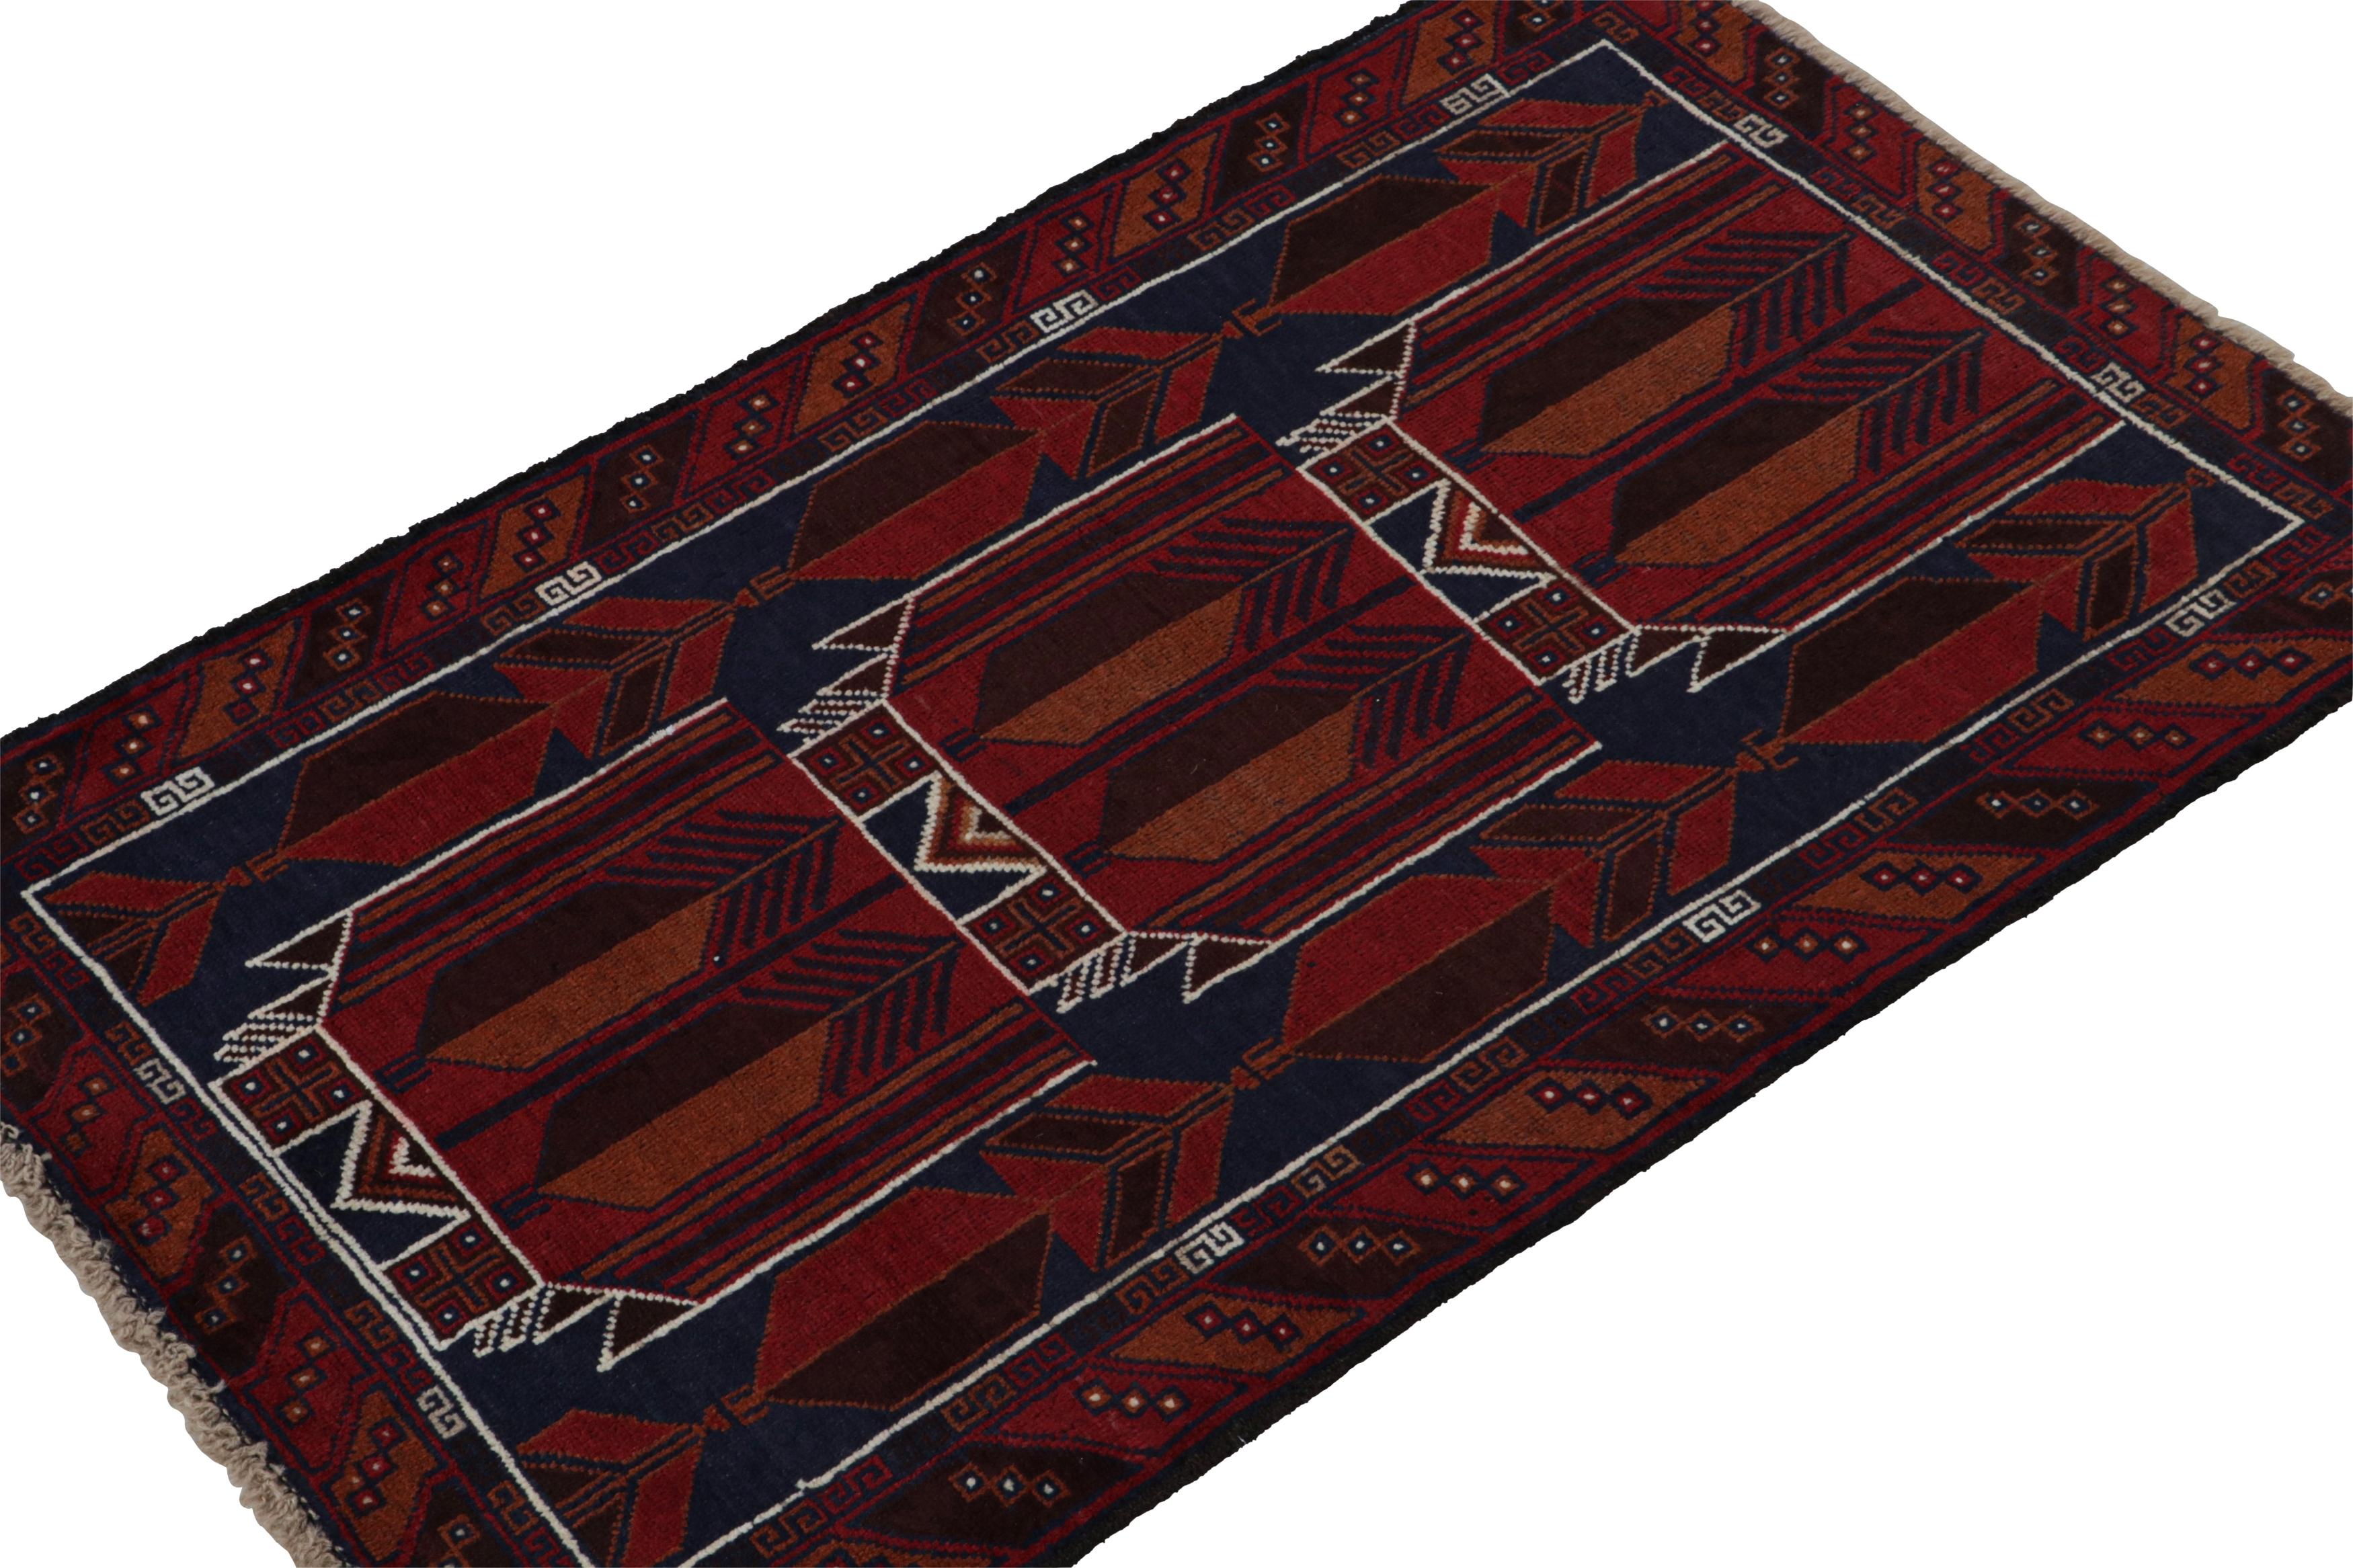 Noué à la main en laine, ce tapis persan 3x4 Baluch des années 1950 est le dernier né de la collection Antique & Kilim de Rug & Kilim.

Sur le Design :

La pièce présente des motifs géométriques tribaux dans des tons rouges, bleus et bruns, avec de